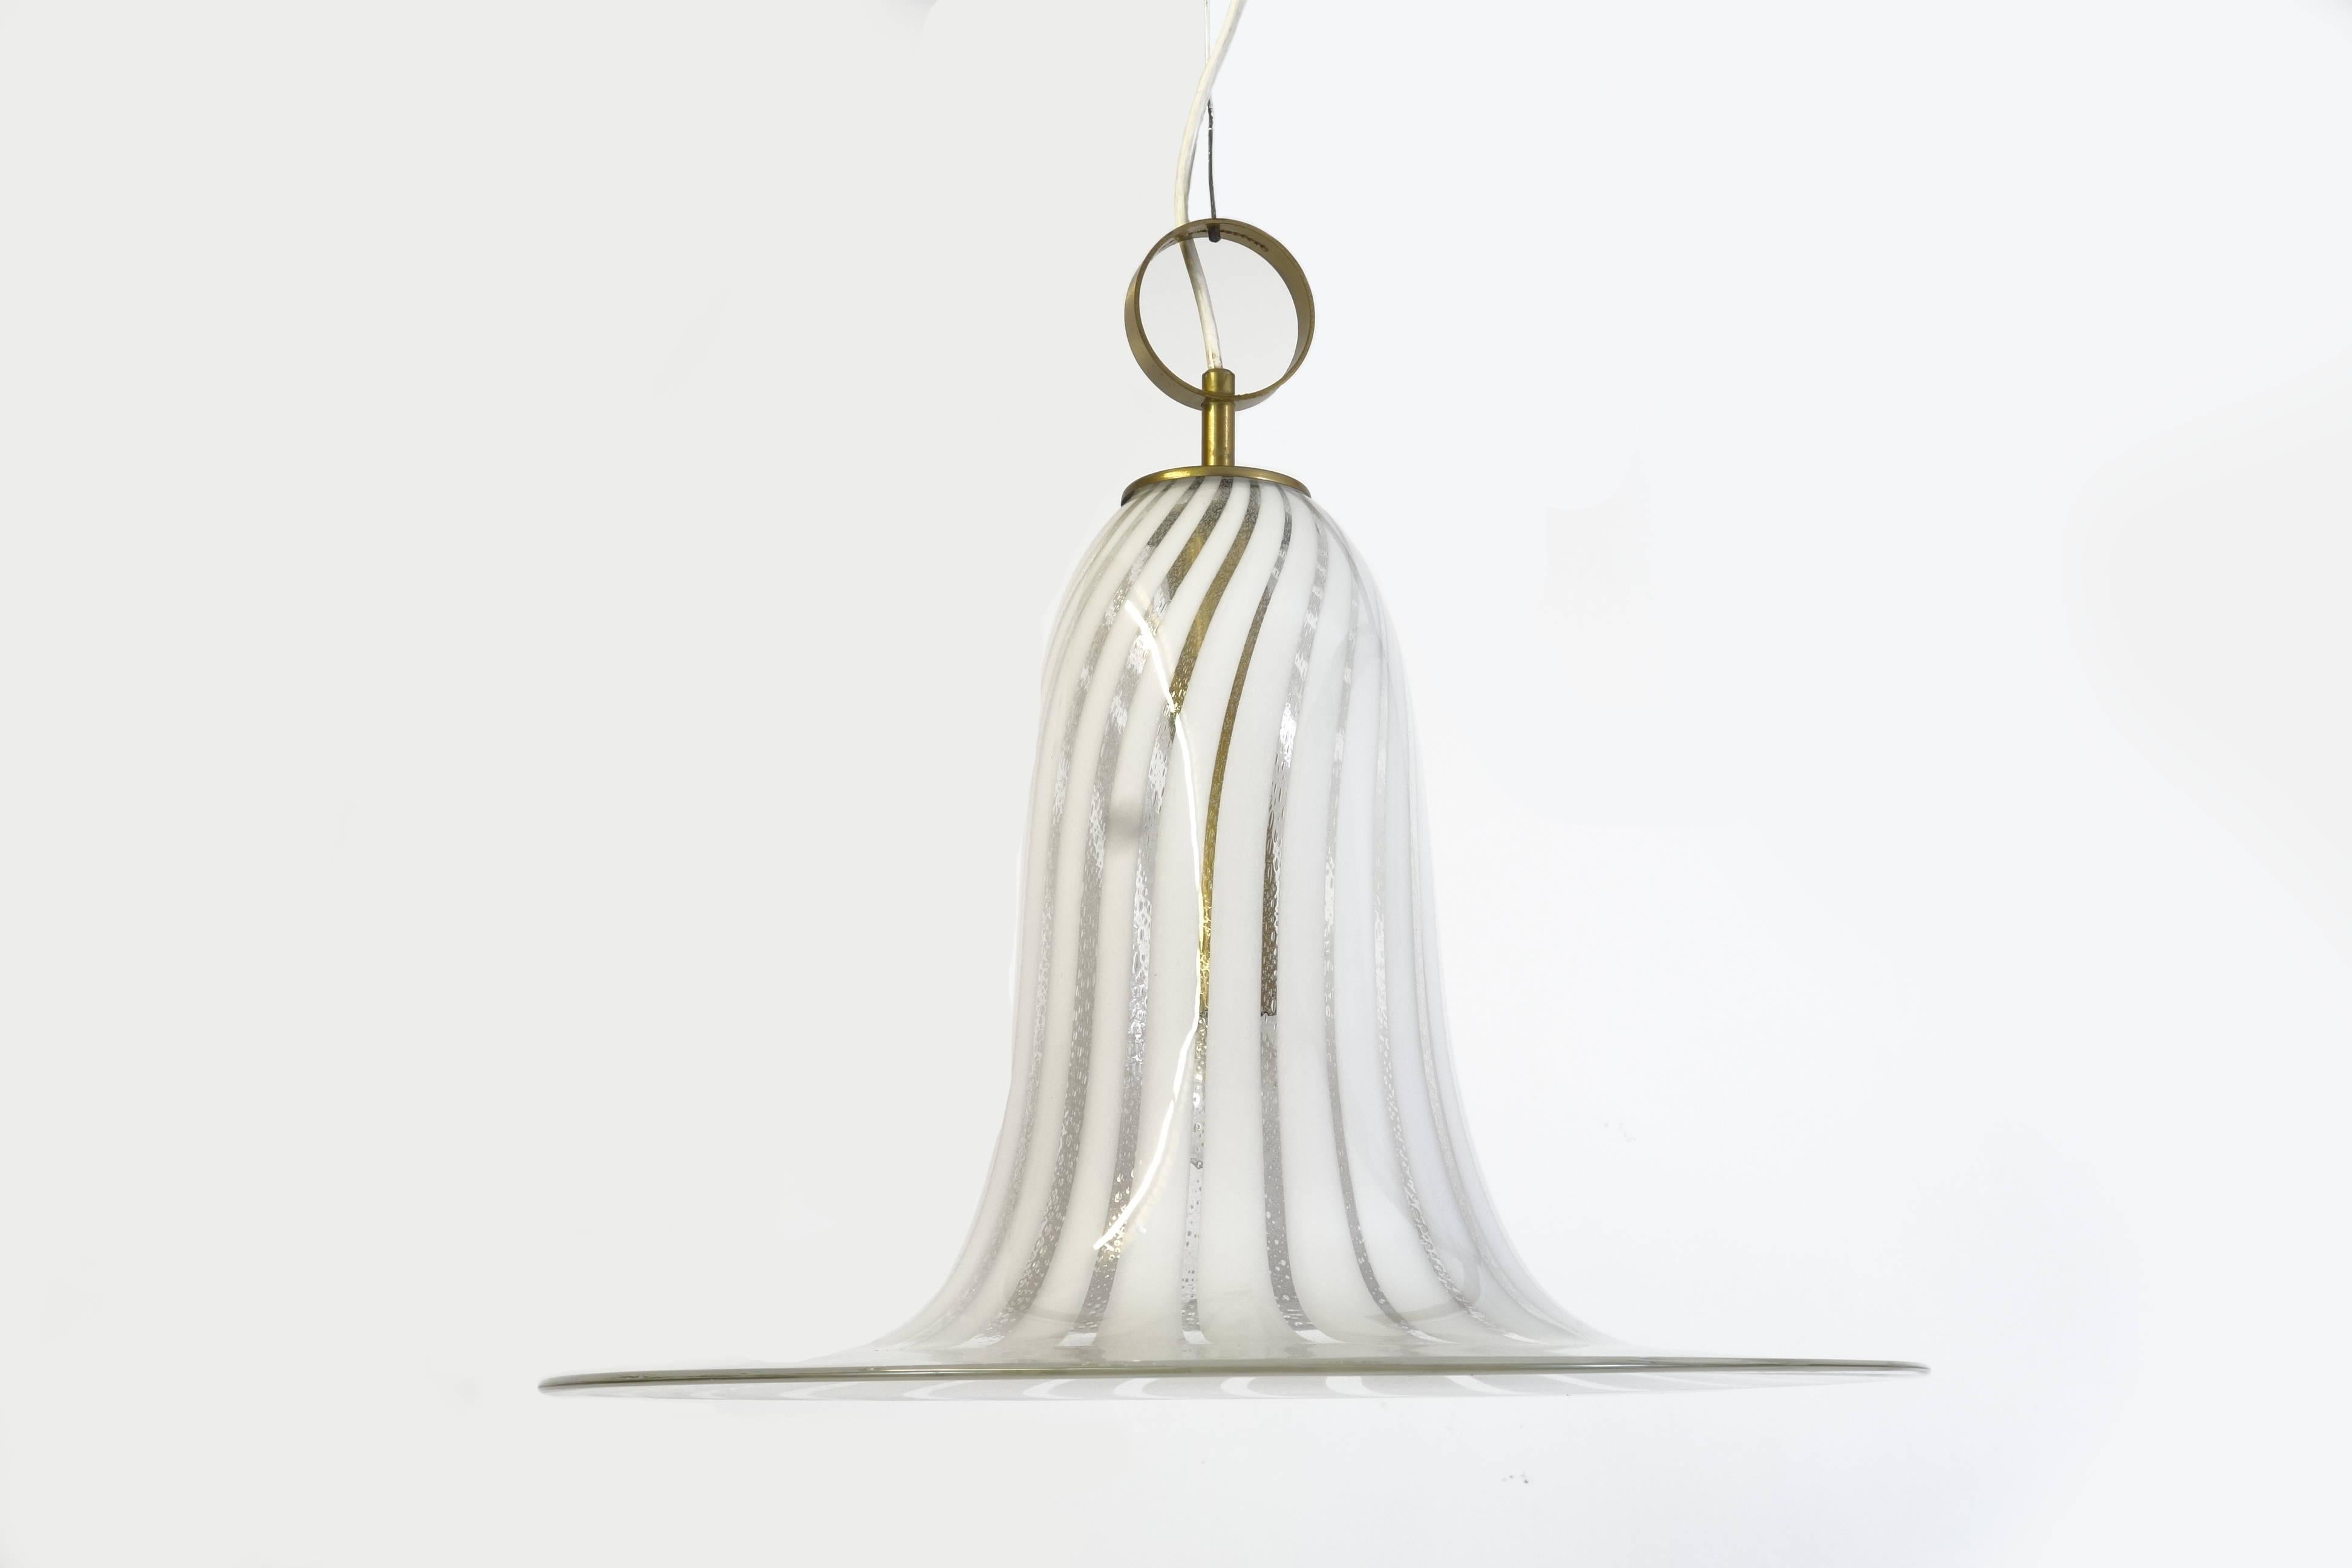 Ein einziges Stück handgefertigtes Muranoglas bildet die Glockenform dieses außergewöhnlichen Kronleuchters italienischen Ursprungs. Das Objekt wurde höchstwahrscheinlich in den 1970er Jahren hergestellt. Das gestaffelte Streifenmuster im Glas